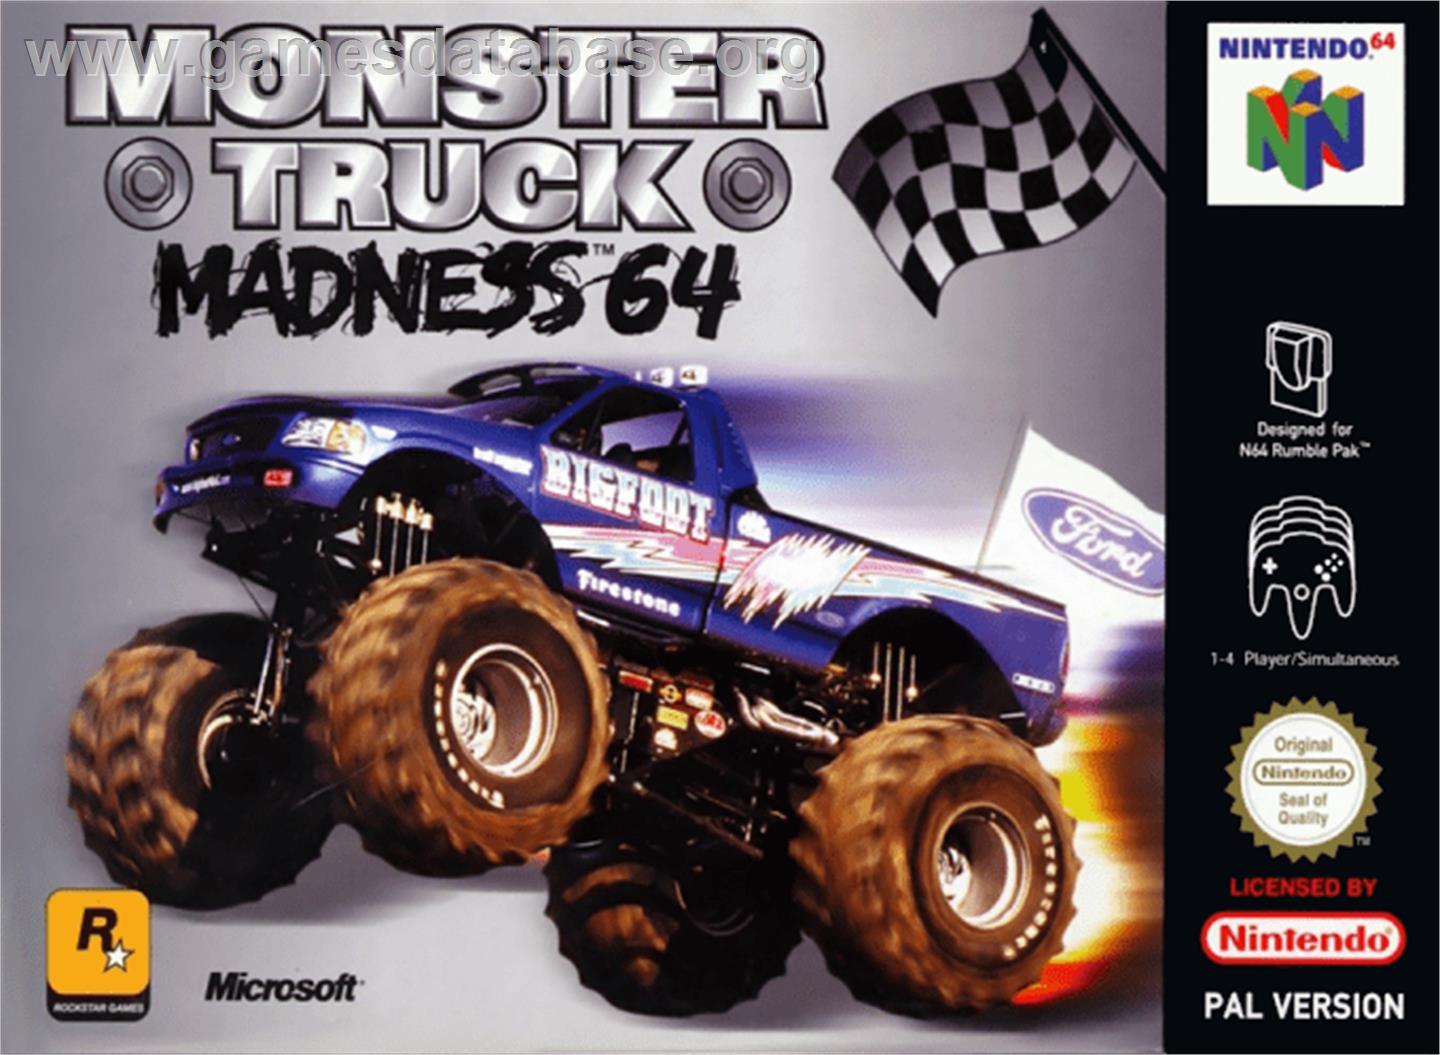 Monster Truck Madness 64 - Nintendo N64 - Artwork - Box